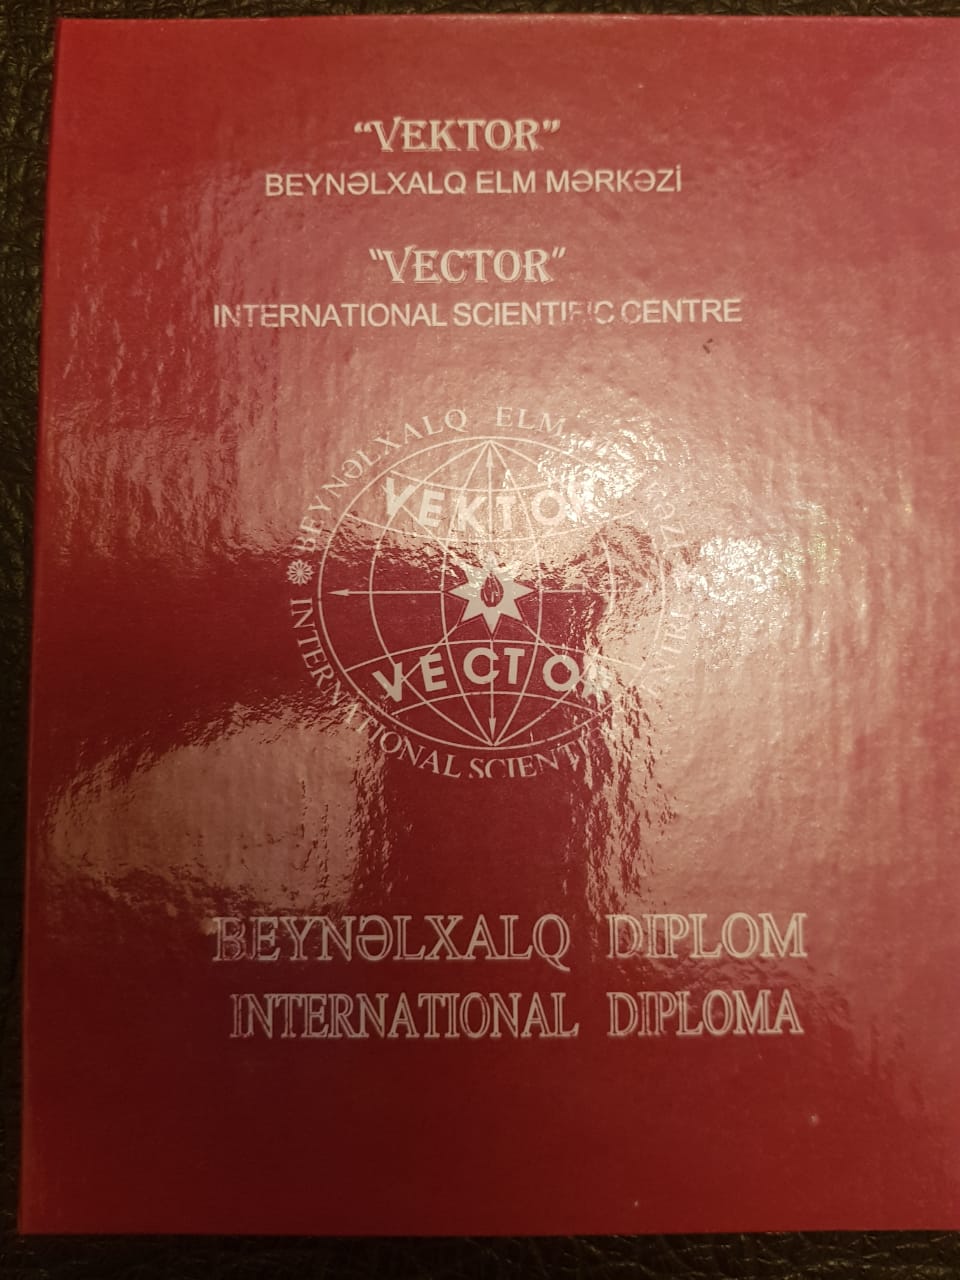 Beynəlxalq diplom